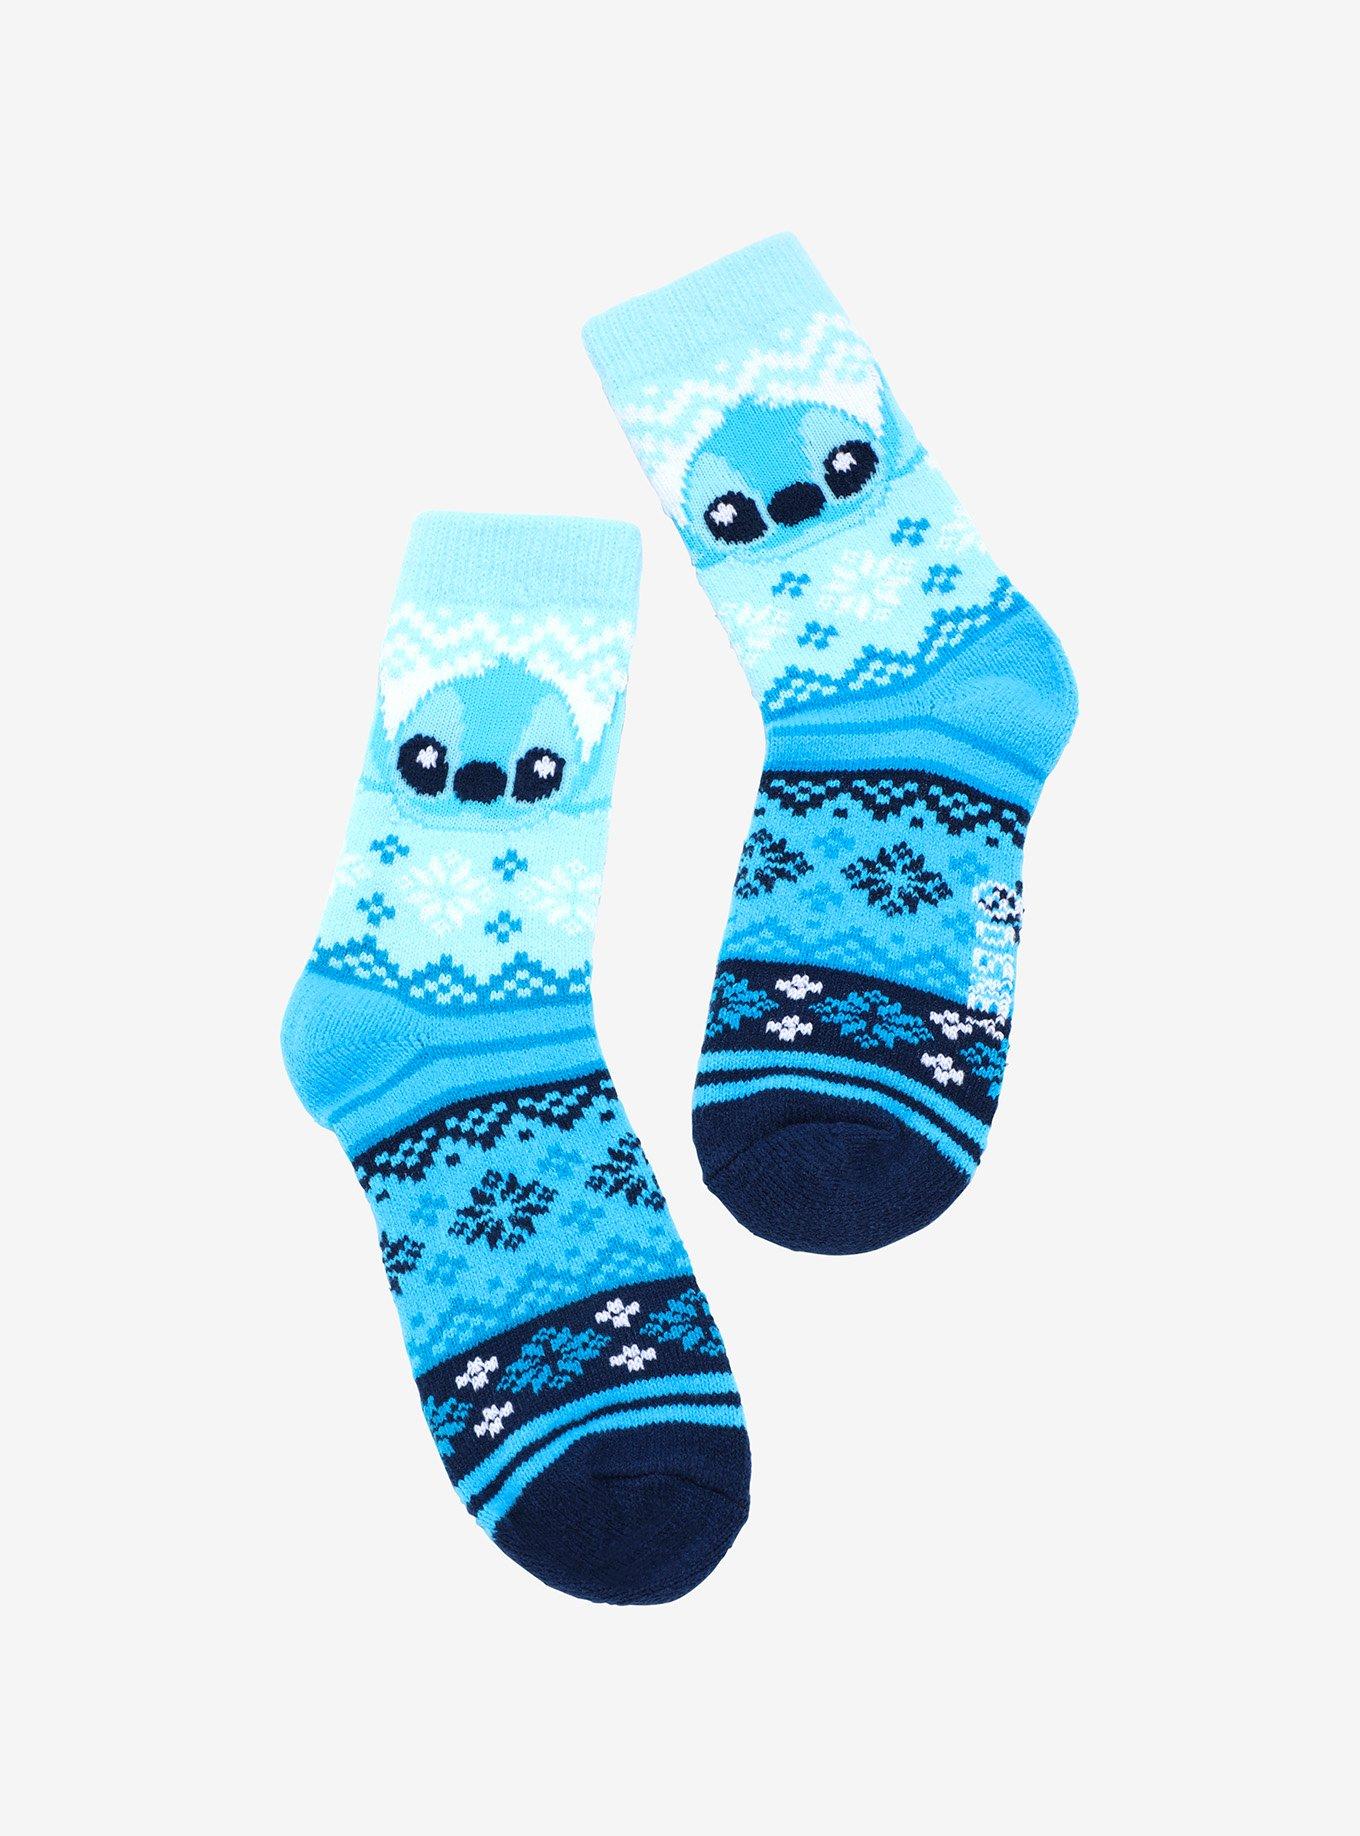 Moana Socks for Sale